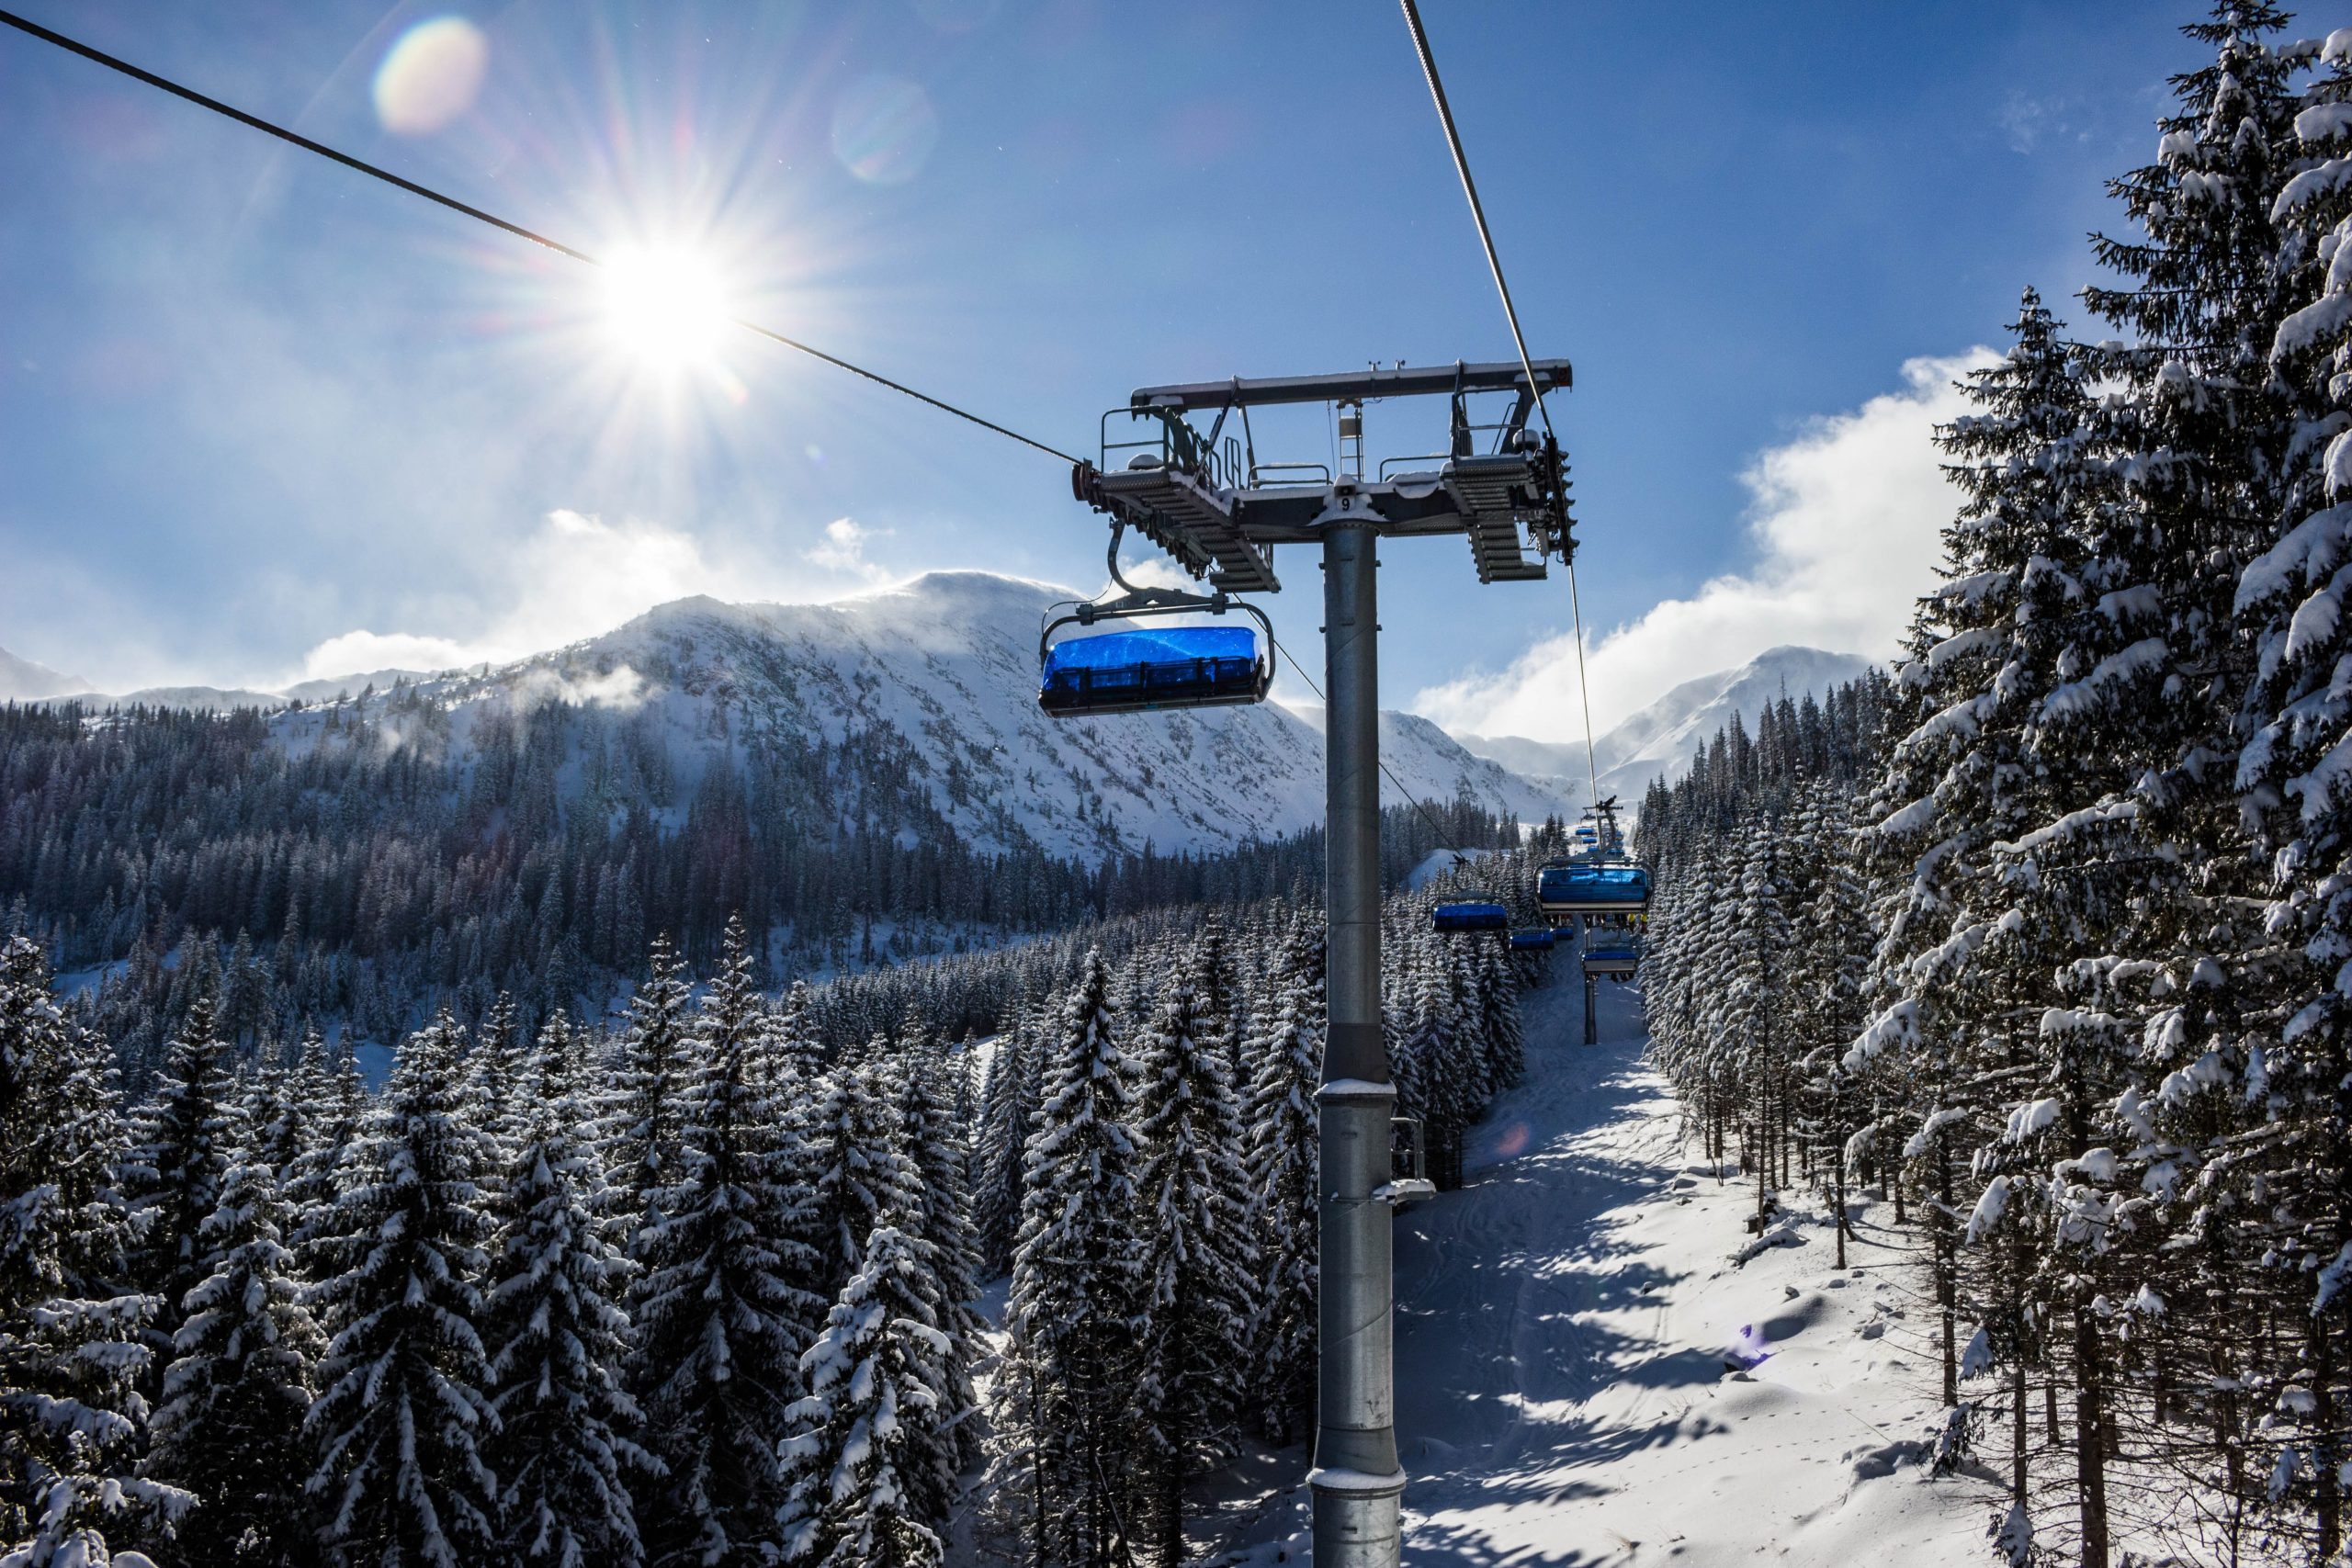 Beginner Ski Lift Tips